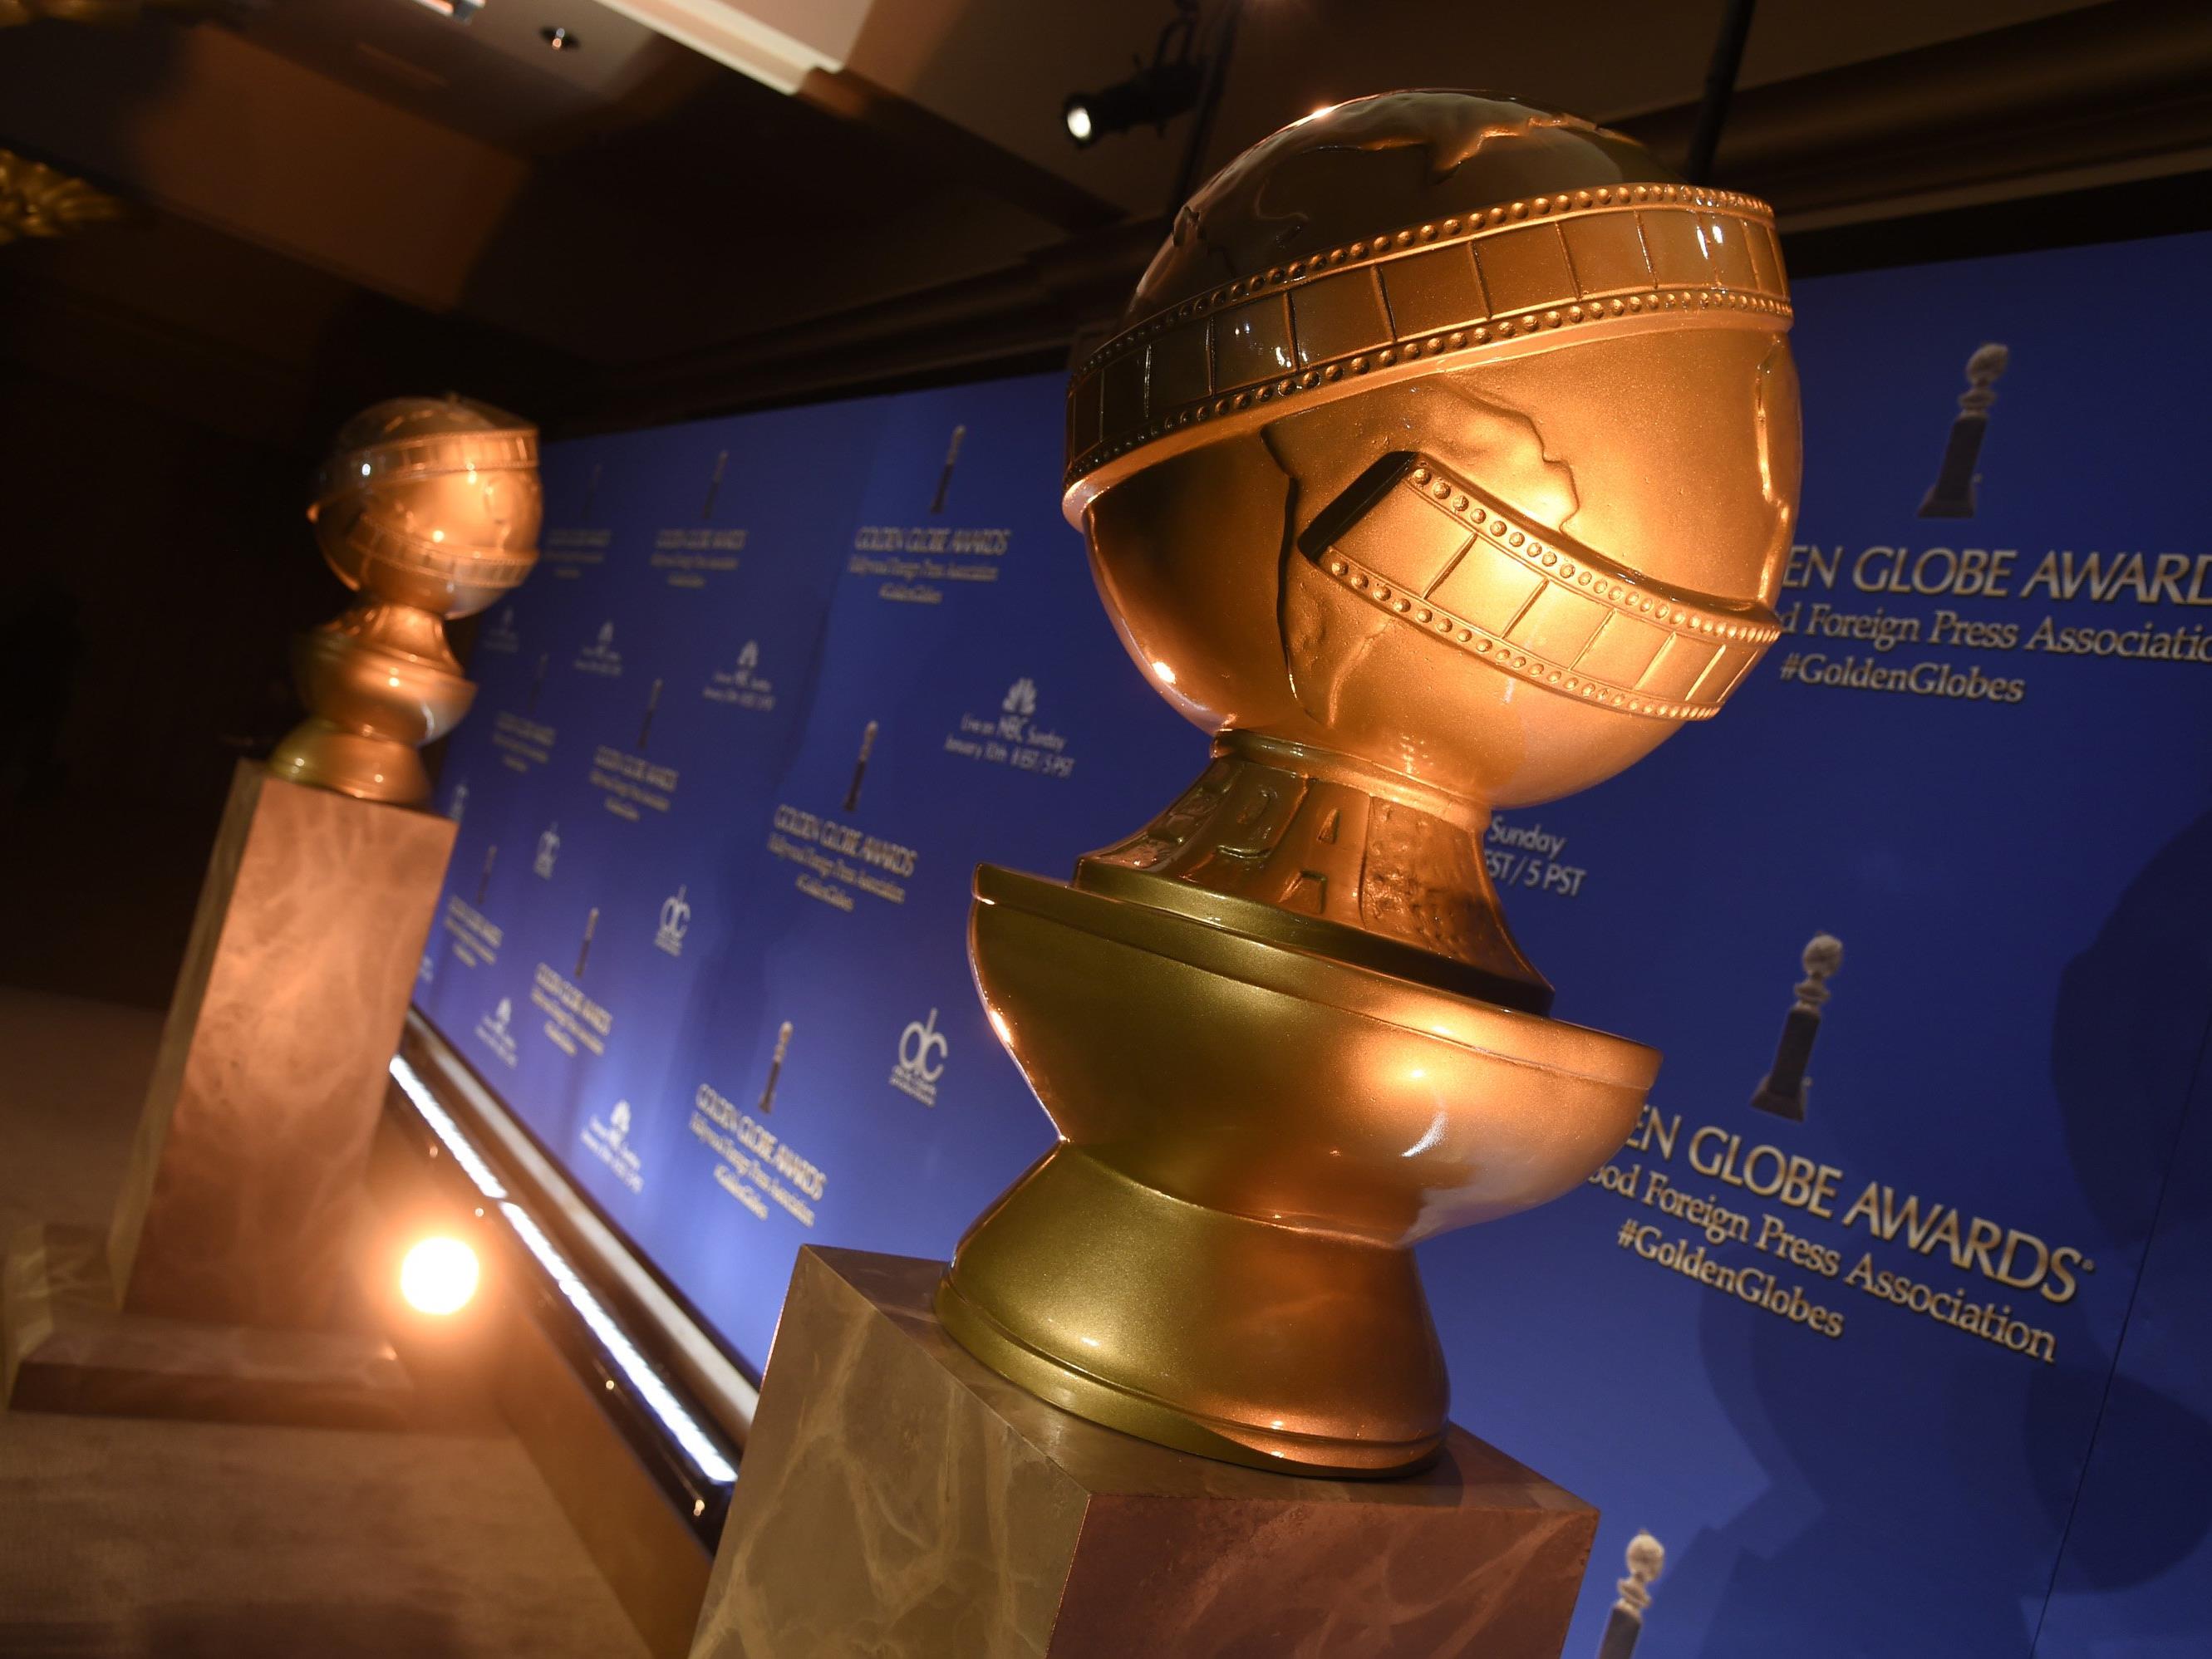 Die Golden Globes Verleihung 2016 live im Wiener Stadtkino.